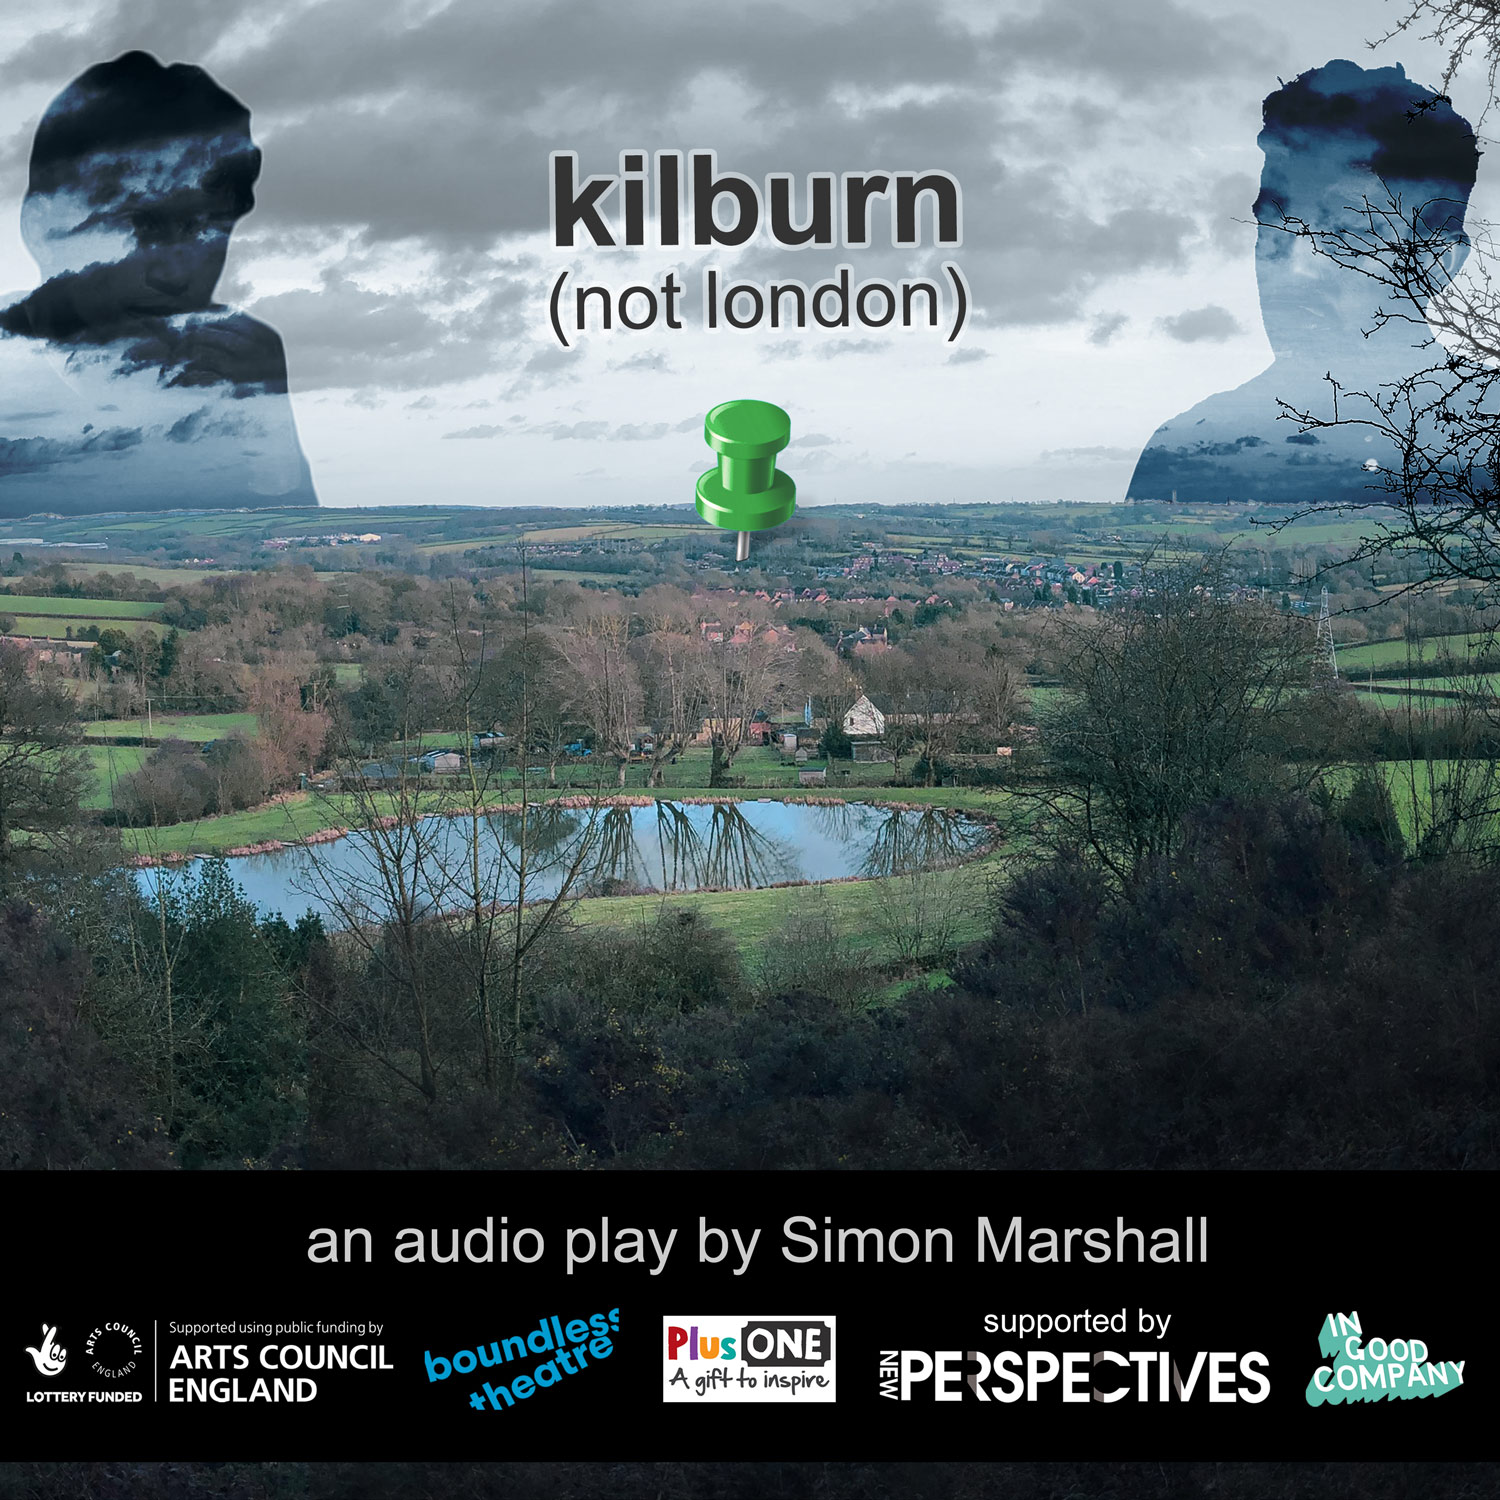 Artwork for kilburn (not london) by Simon Marshall